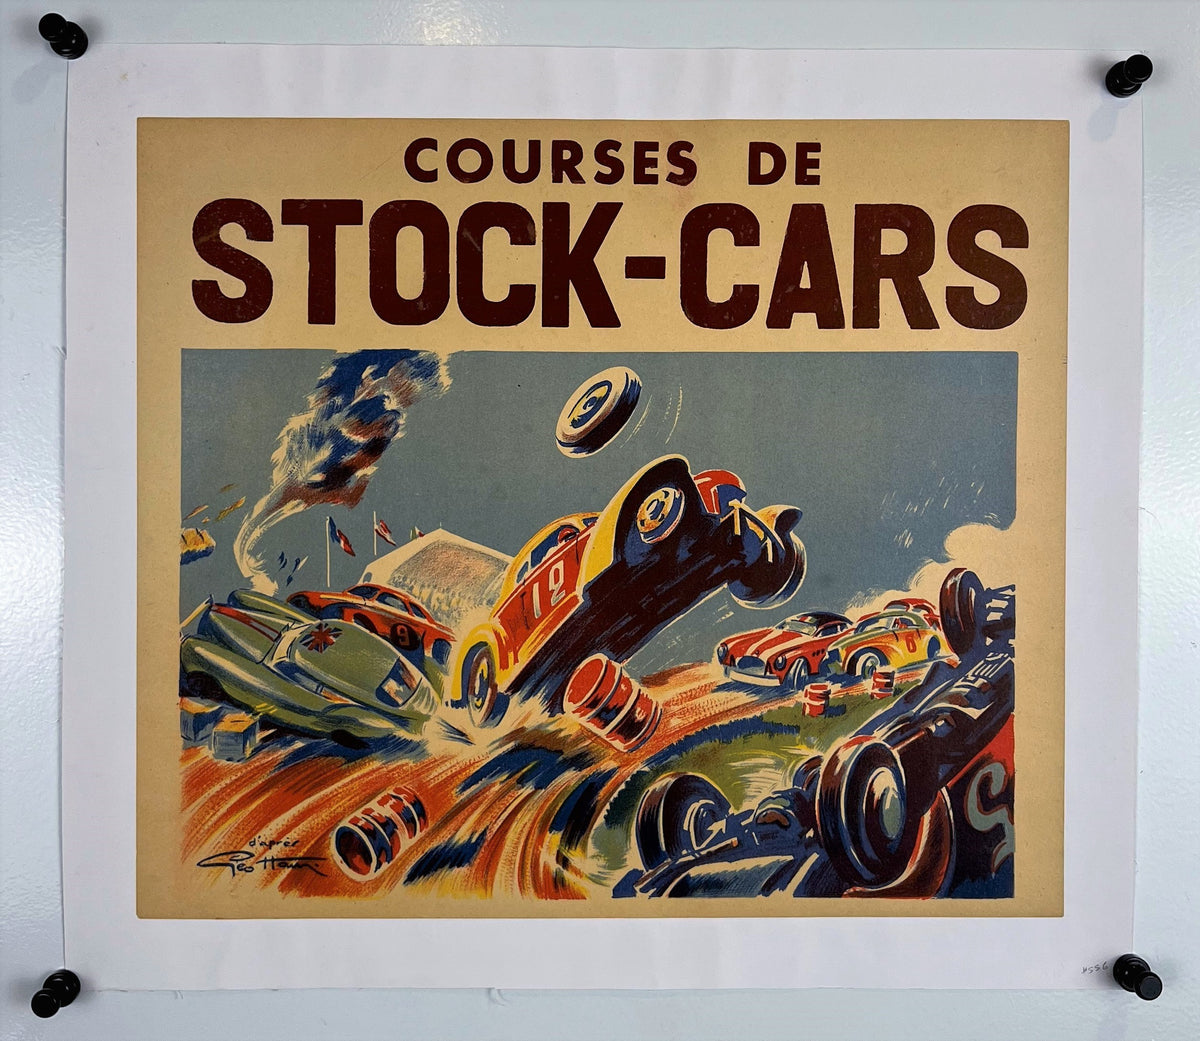 Courses de Stock-Cars - Authentic Vintage Poster